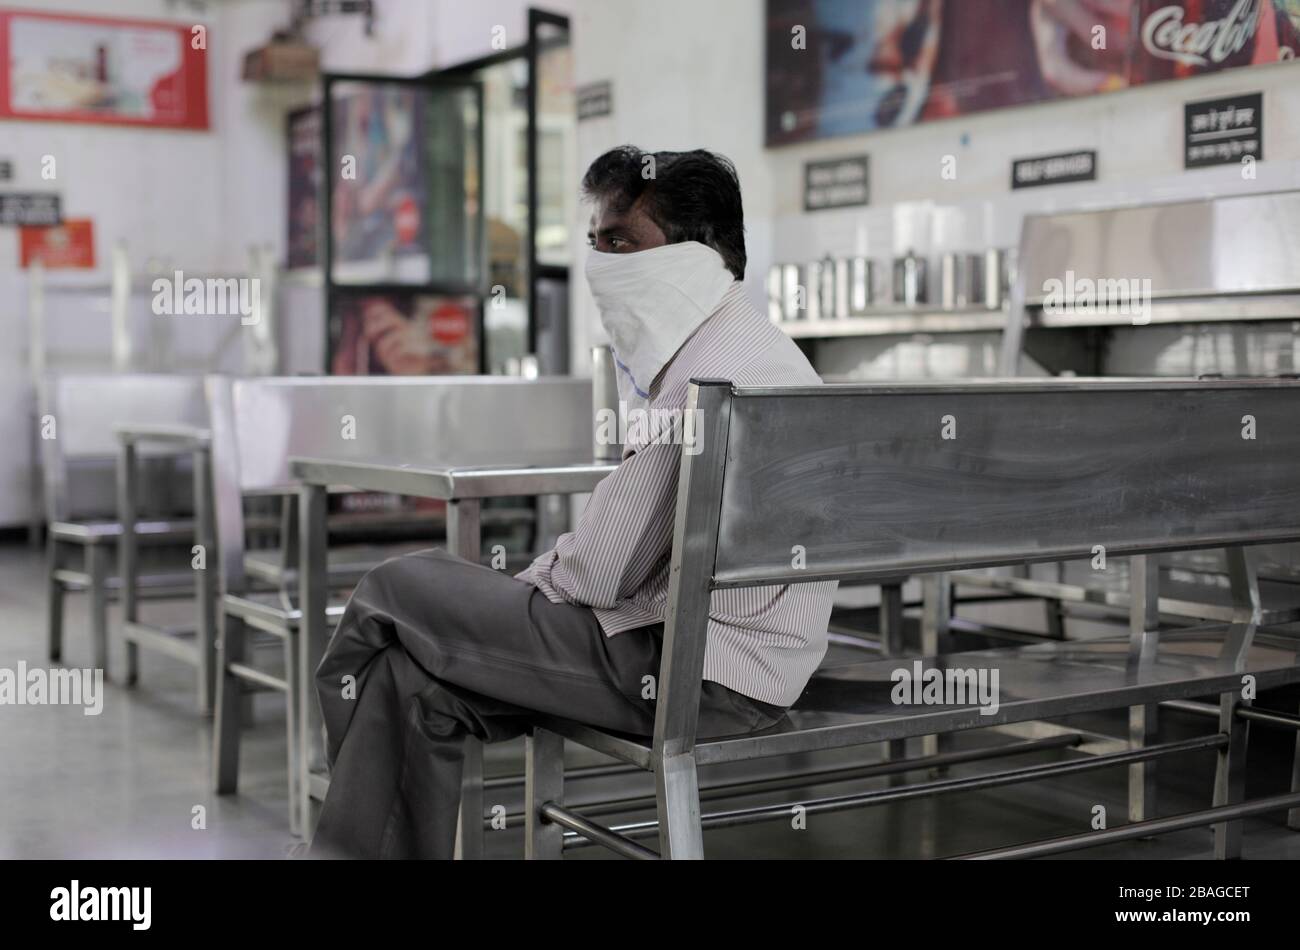 Ein Mann, der einen Schal als Maske trägt, sitzt in einem leeren Restaurant. Während die Schulen und Universitäten wegen der Kovid 19 vom 16. März an geschlossen sind, sind die Restaurants der Studenten leer. Die Zahl der Todesopfer steigt auf 20 und die bestätigten Fälle auf 863. Stockfoto